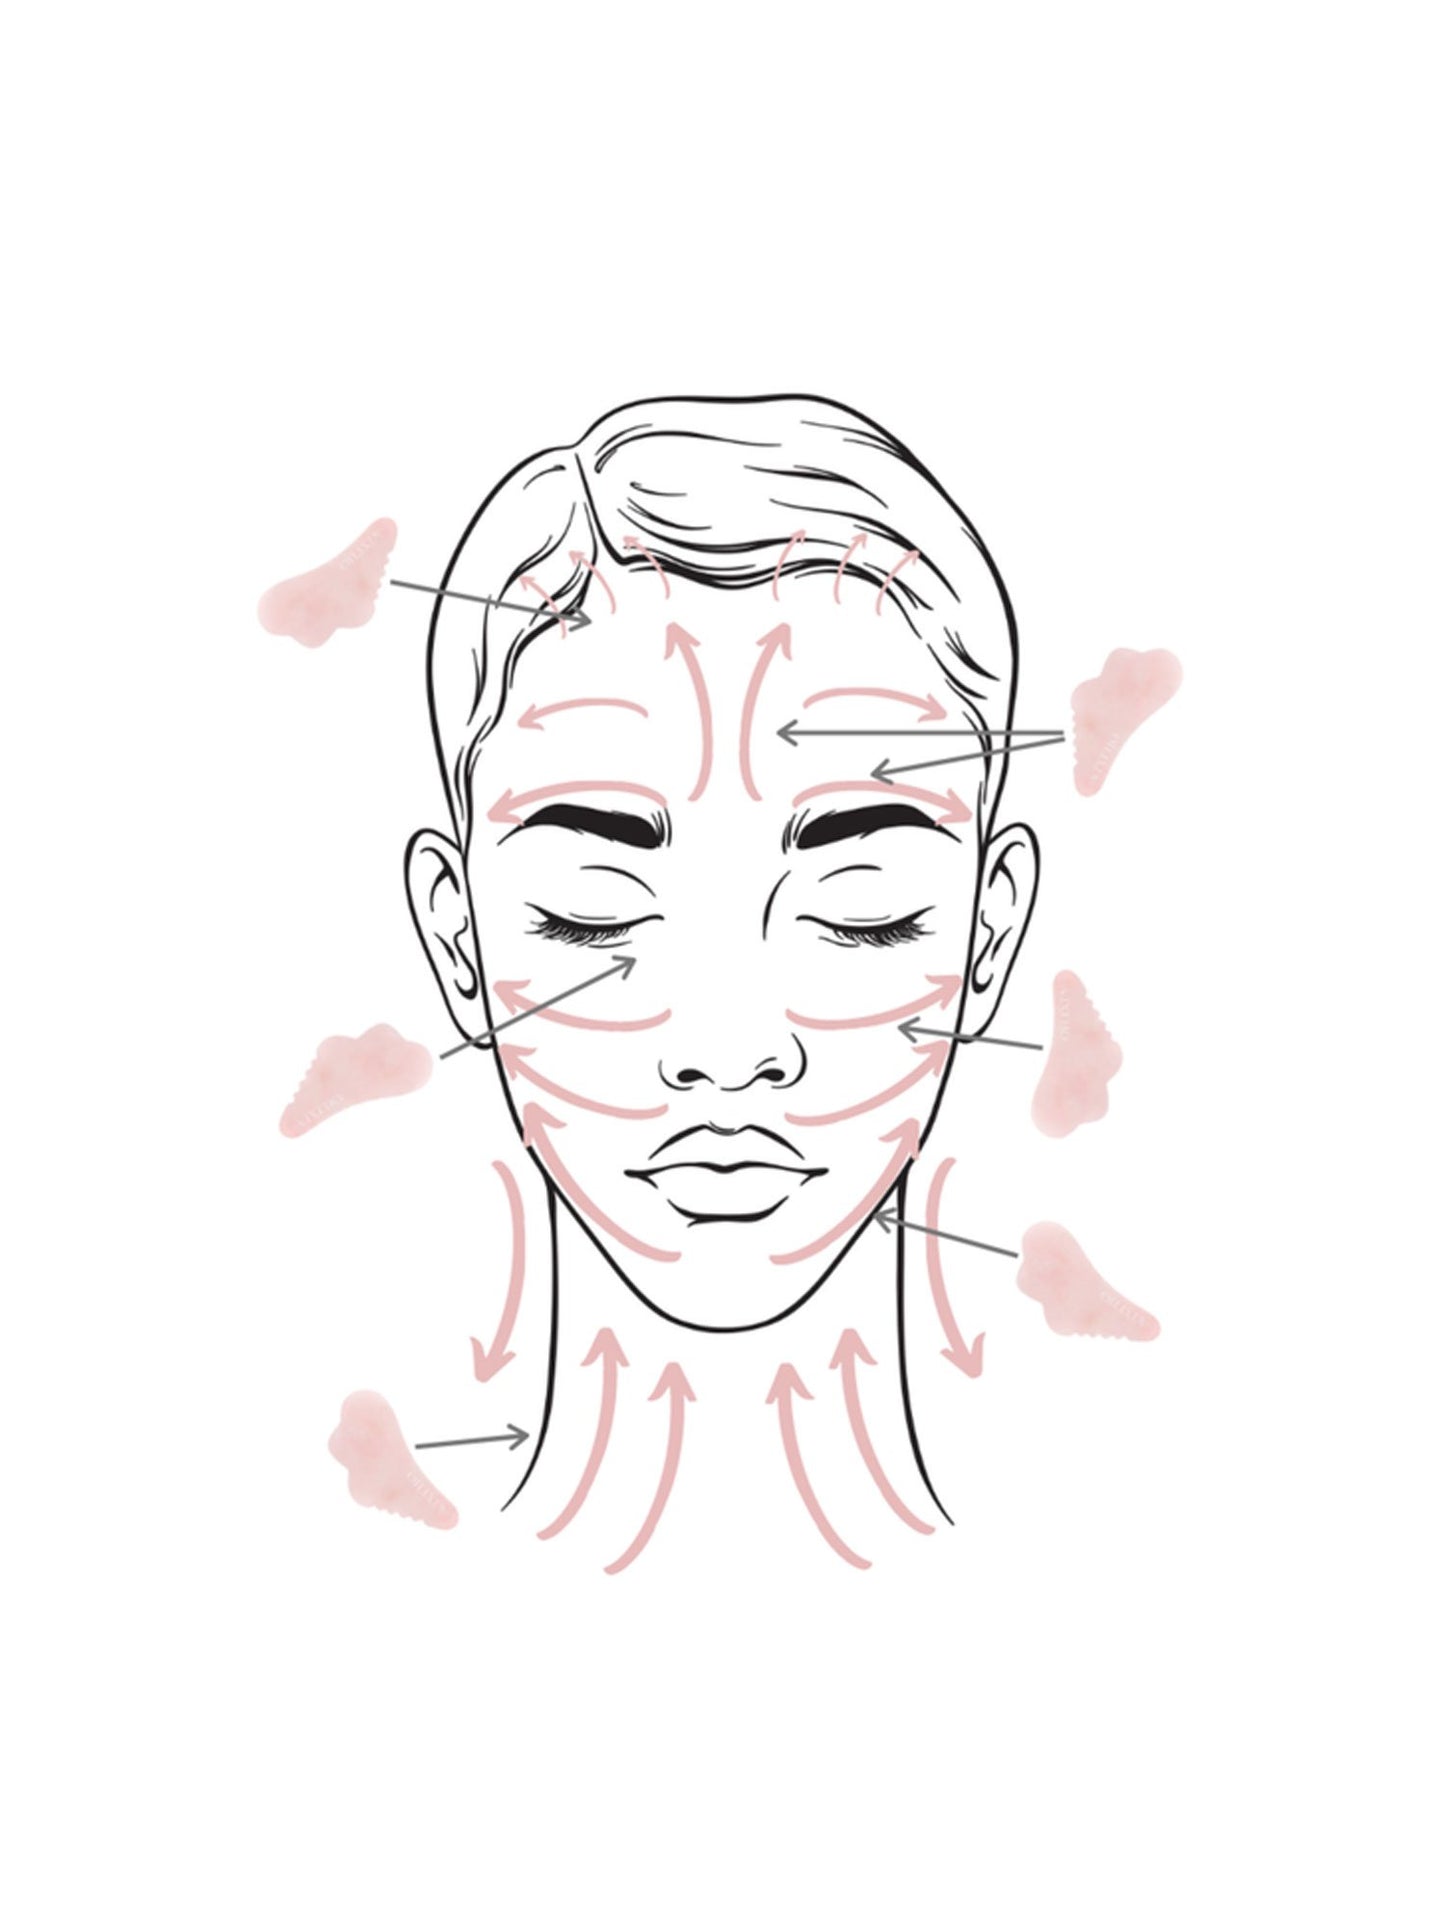 Outil de massage du visage Gua Sha au quartz rose Olixa